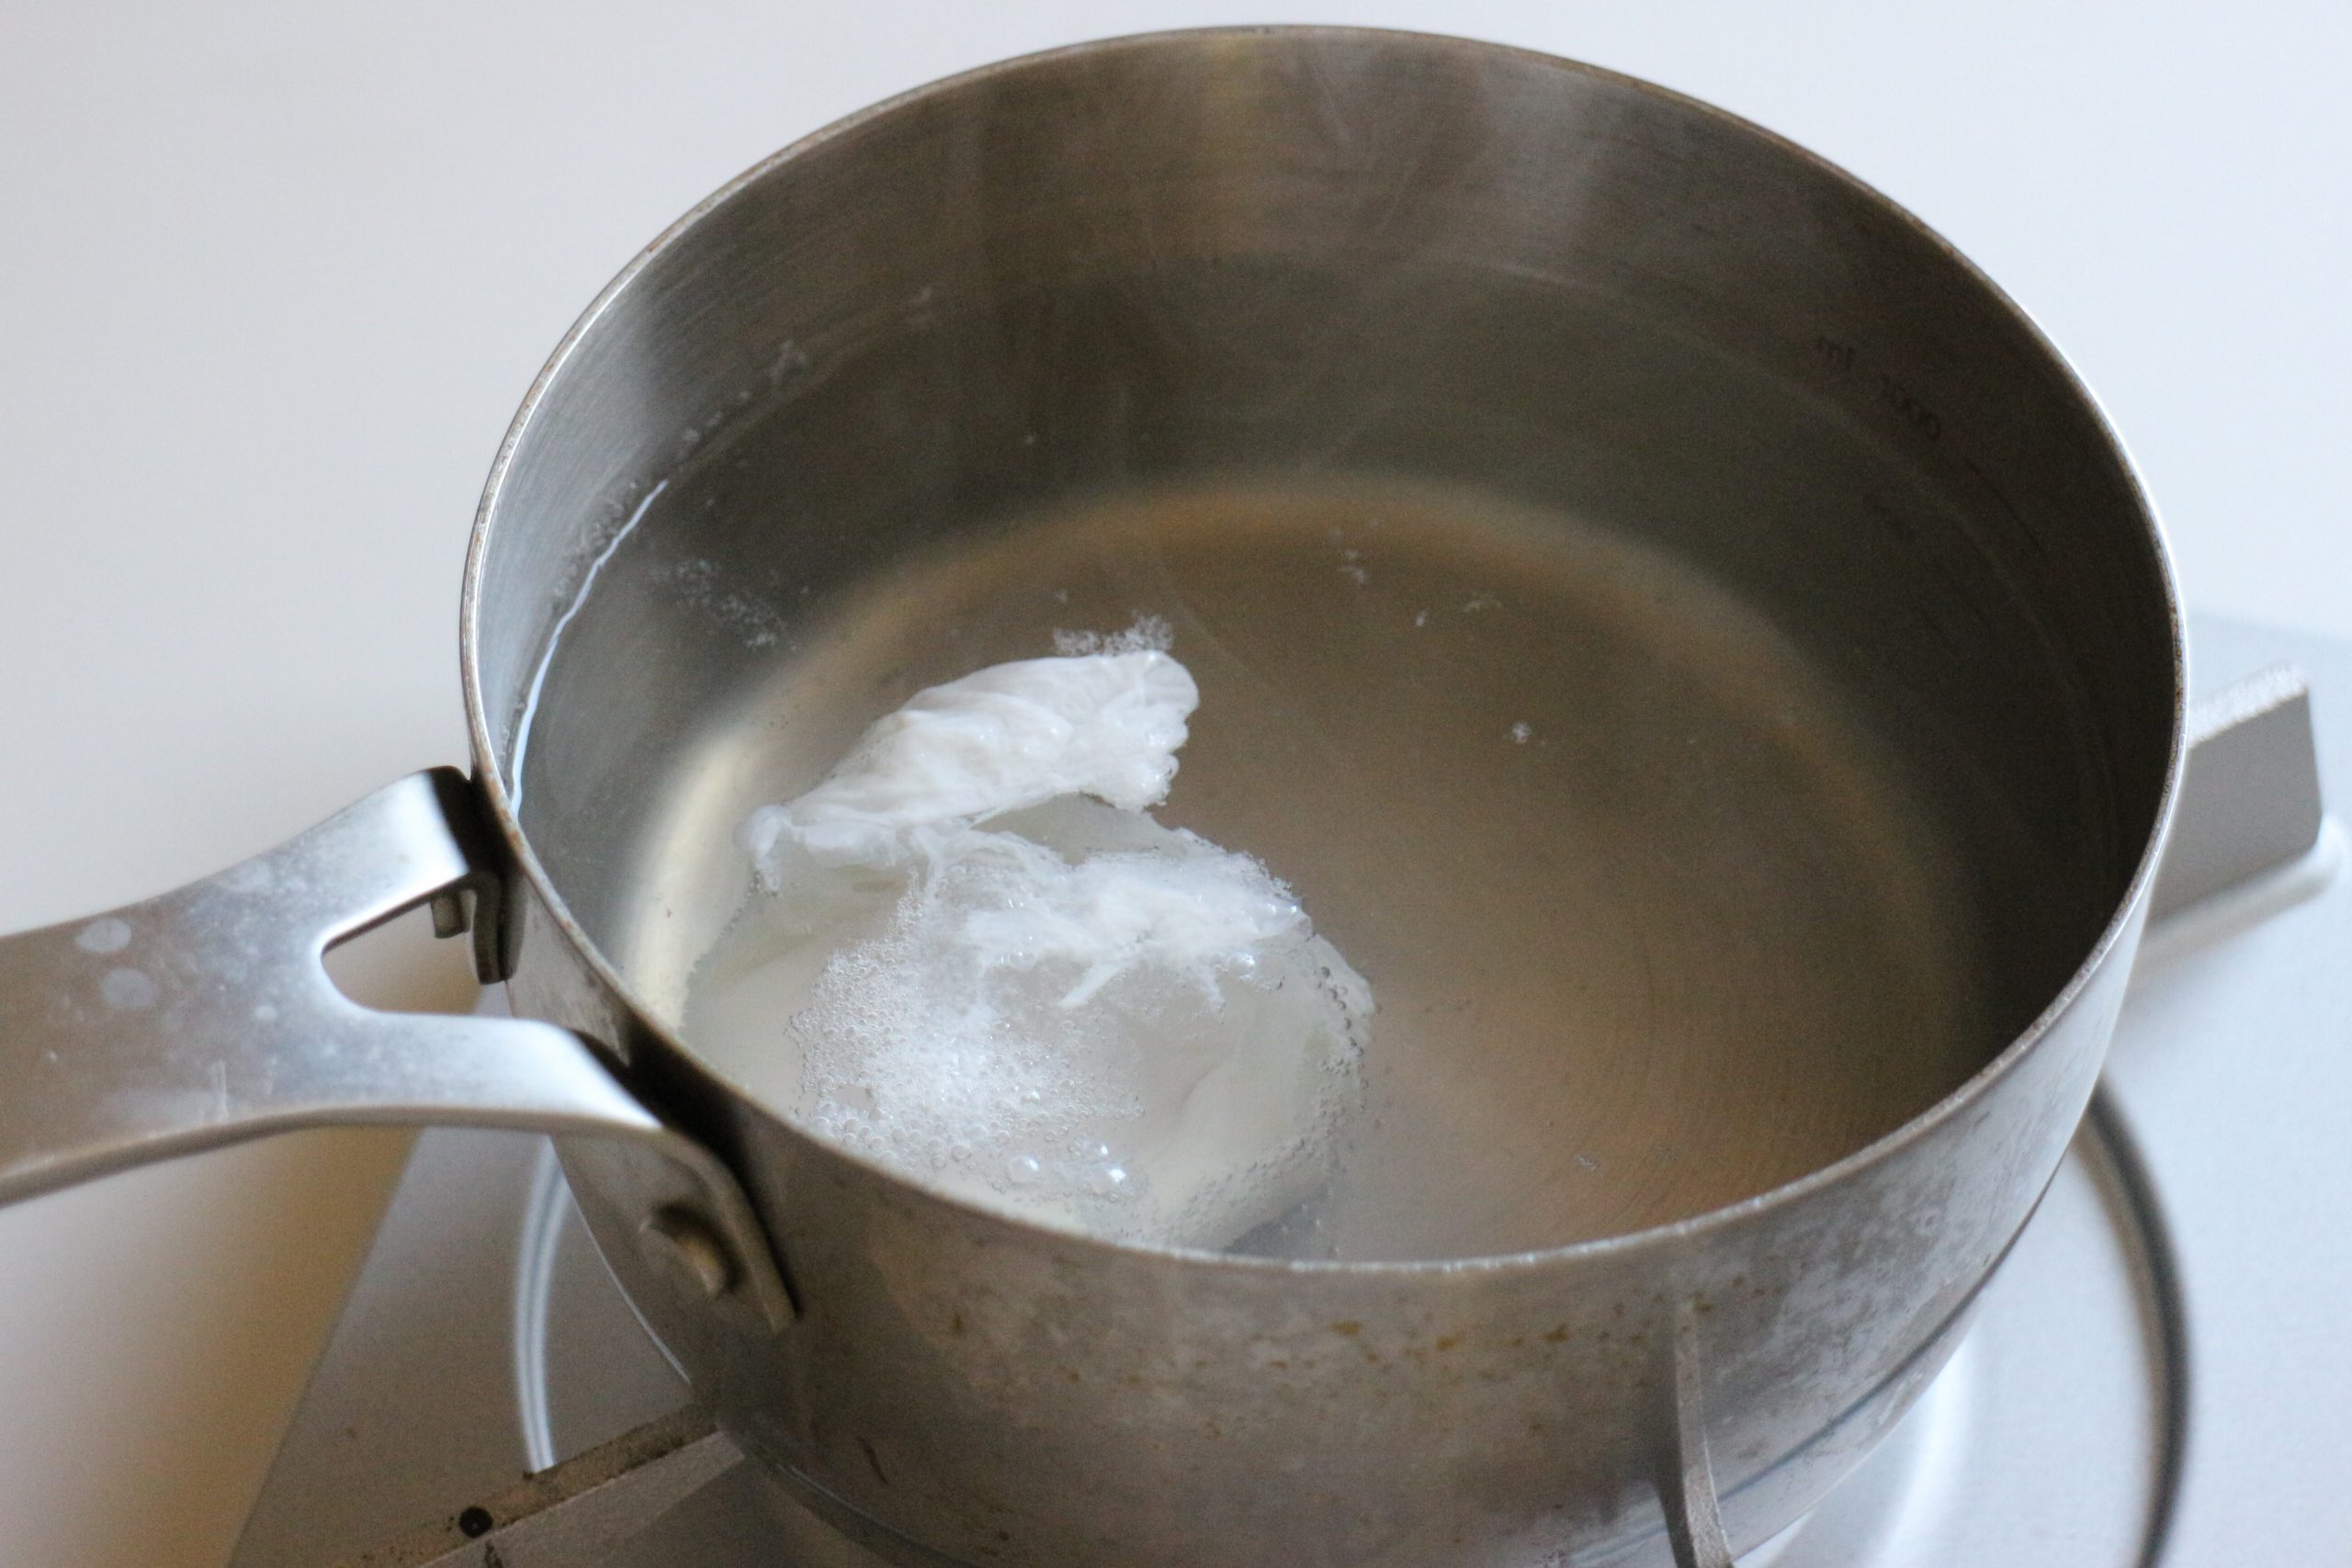 たっぷり湯を沸かし、弱火にし、酢を入れてたまごをゆっくりと割り入れる。
卵白が固まってきたら丁寧に救い上げて器に入れておく。
